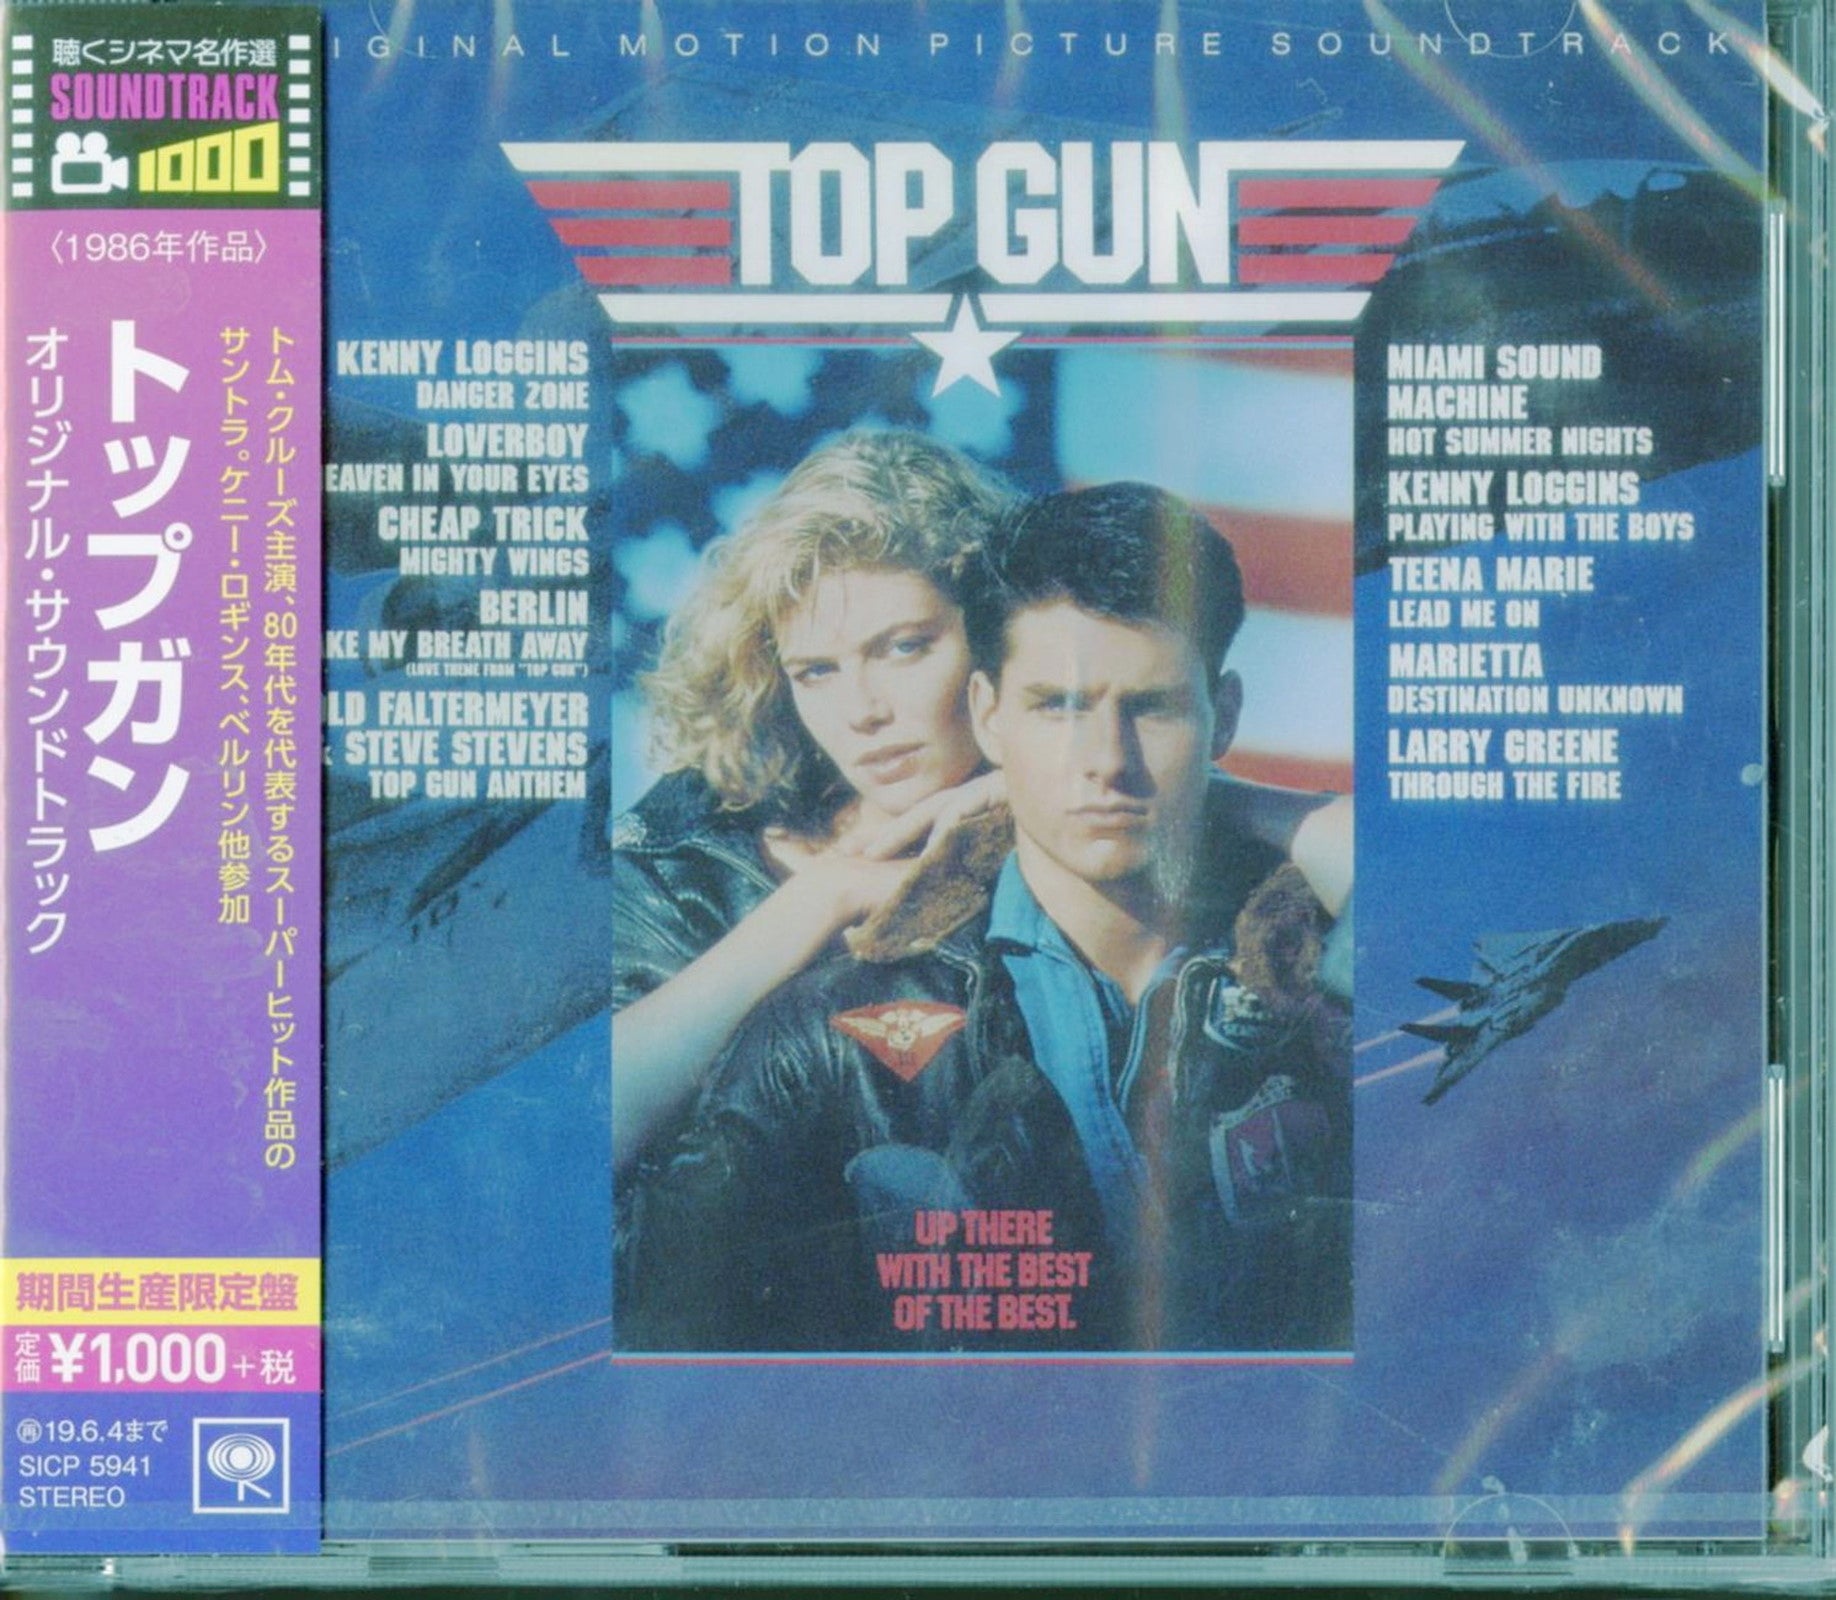  Top Gun: CDs & Vinyl